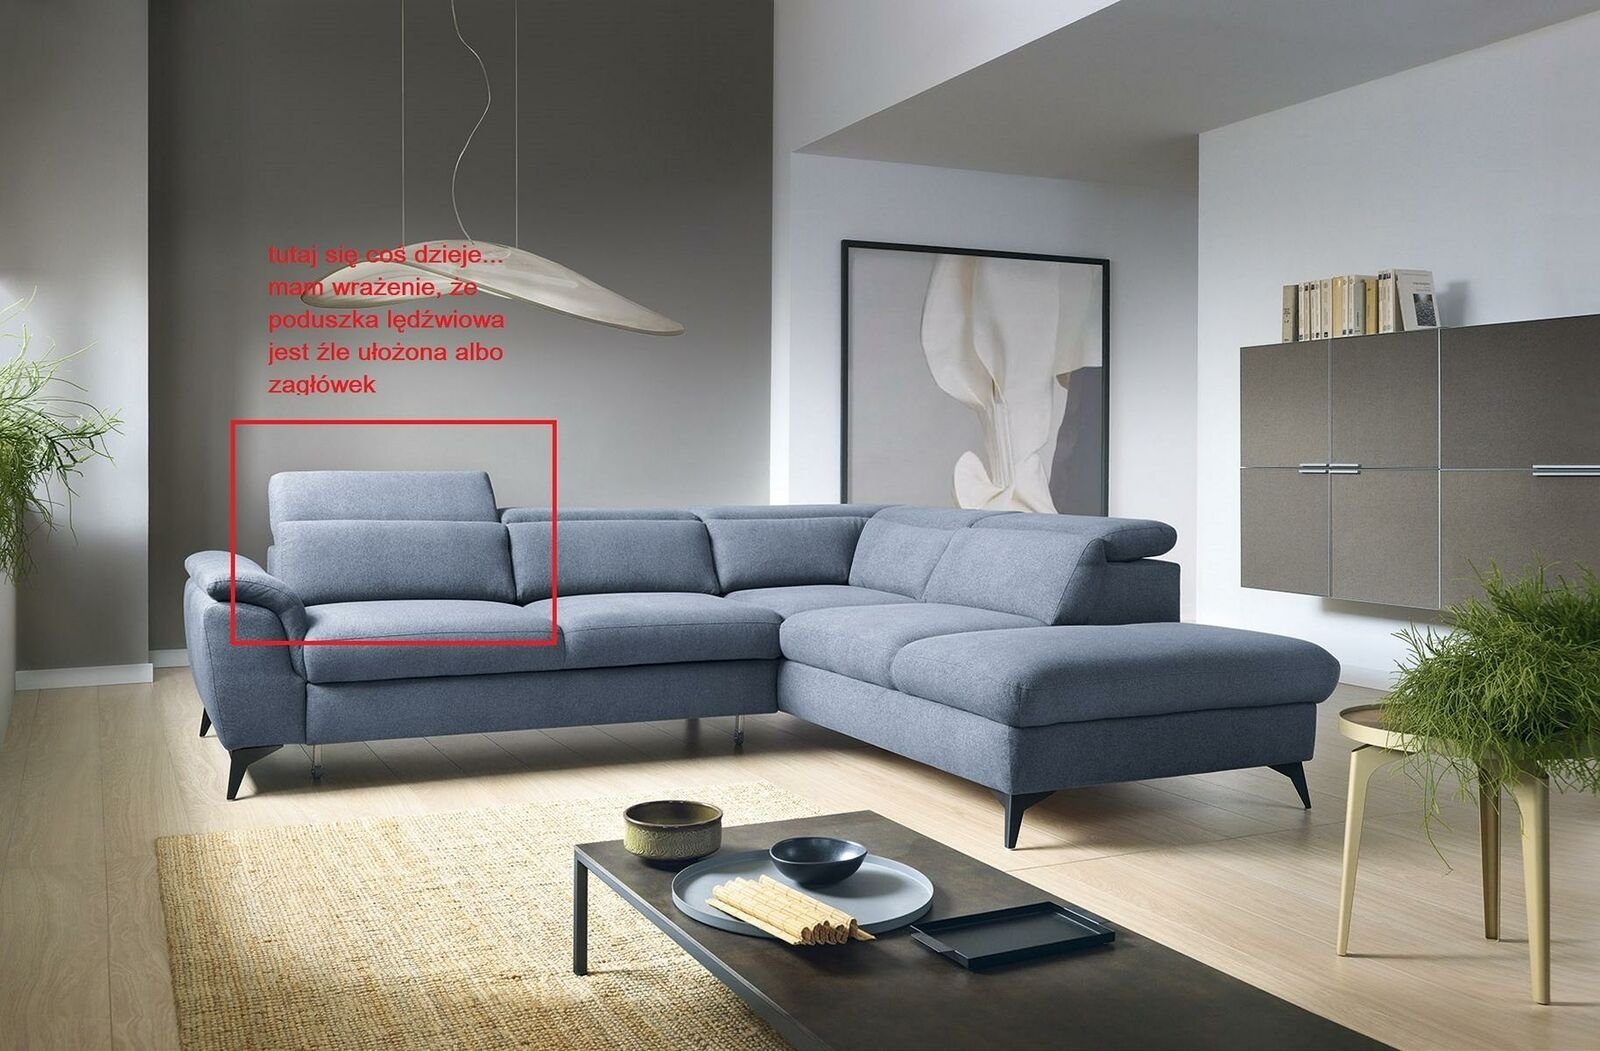 Sehr beliebt zum niedrigsten Preis JVmoebel Ecksofa, Wohnzimmer Polsterung Sofas Blau Modern Grün L-Form Ecksofa Design Neu